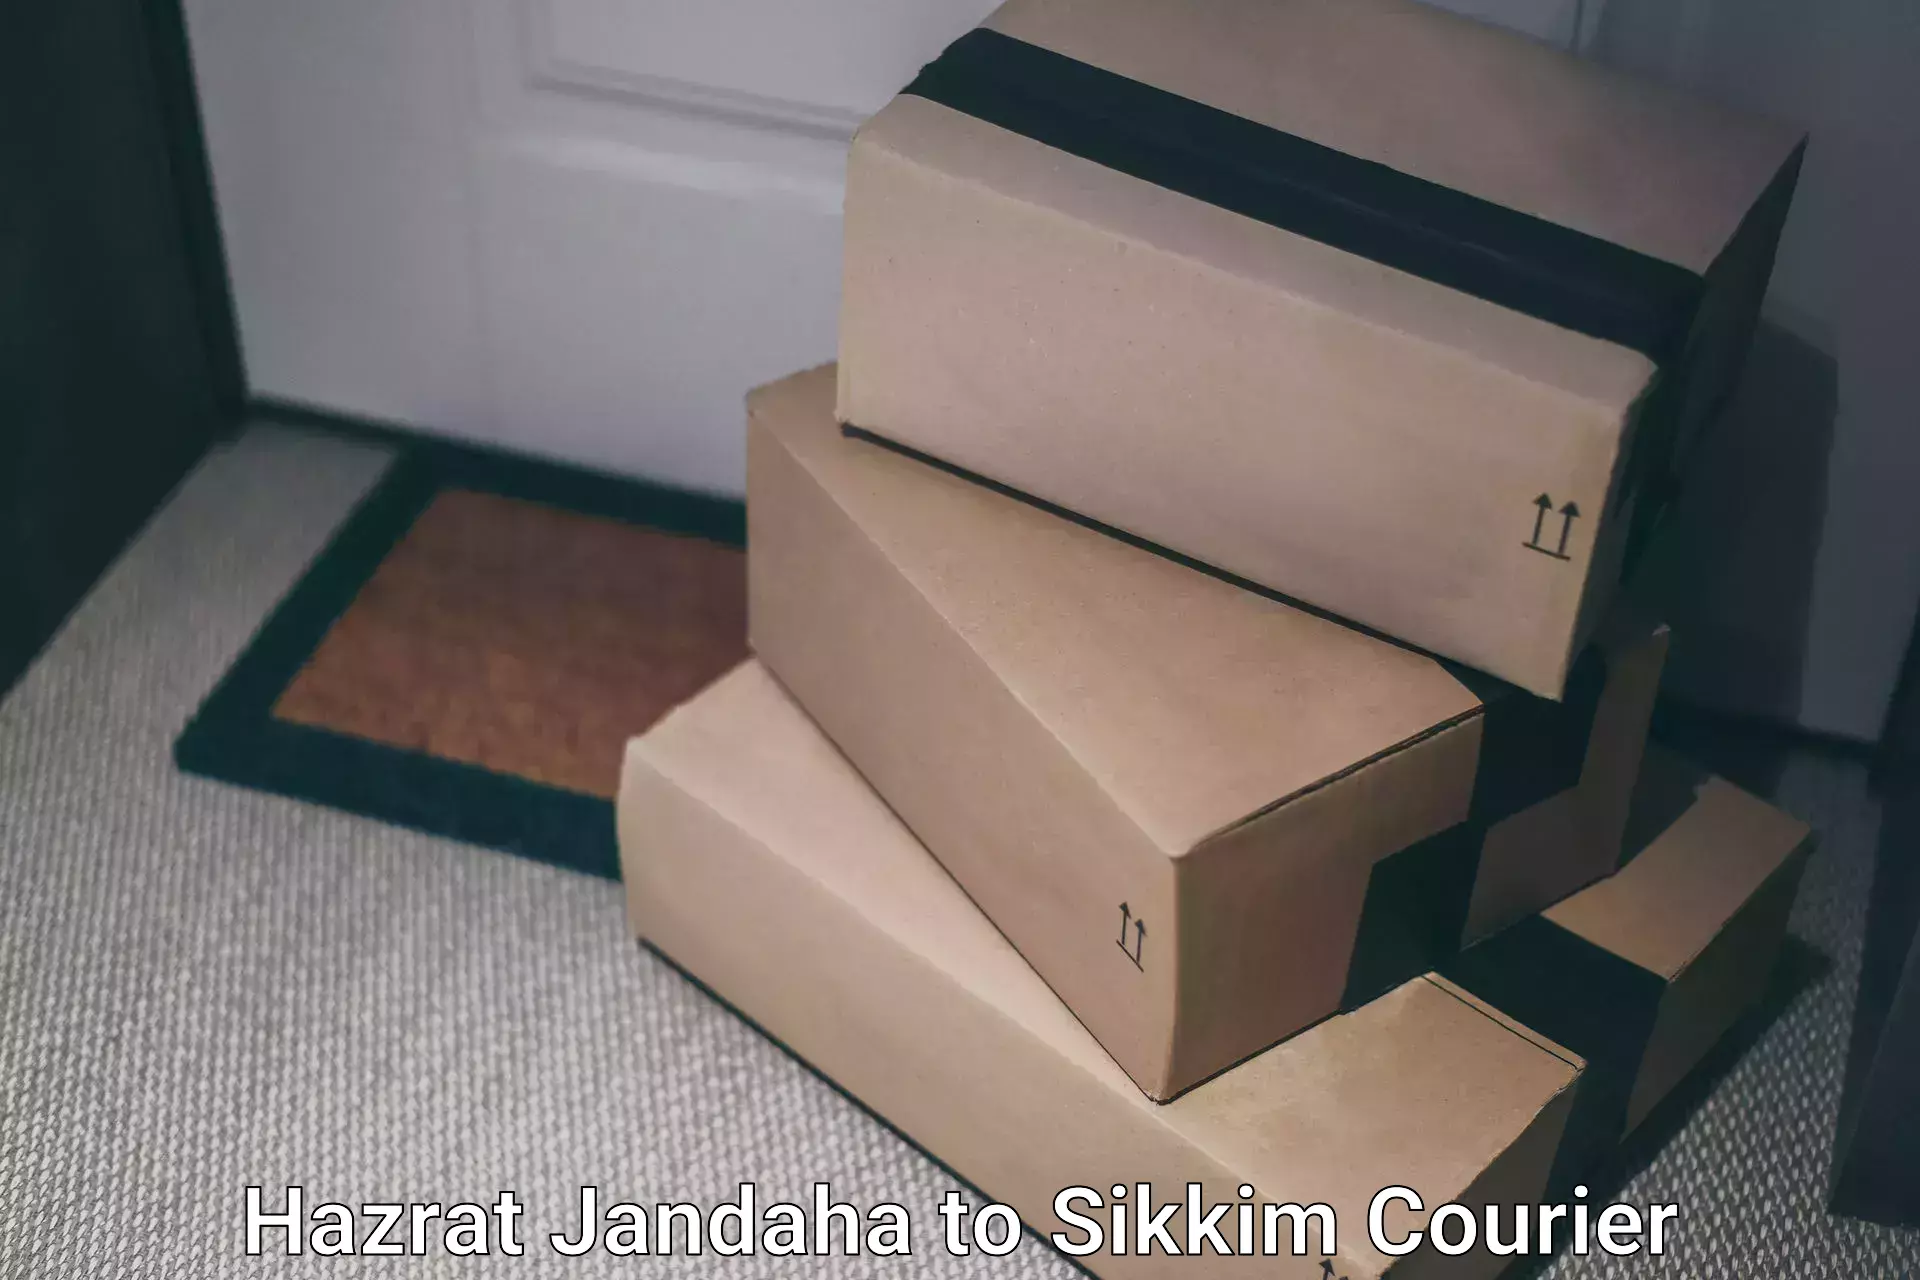 Advanced shipping technology Hazrat Jandaha to Sikkim